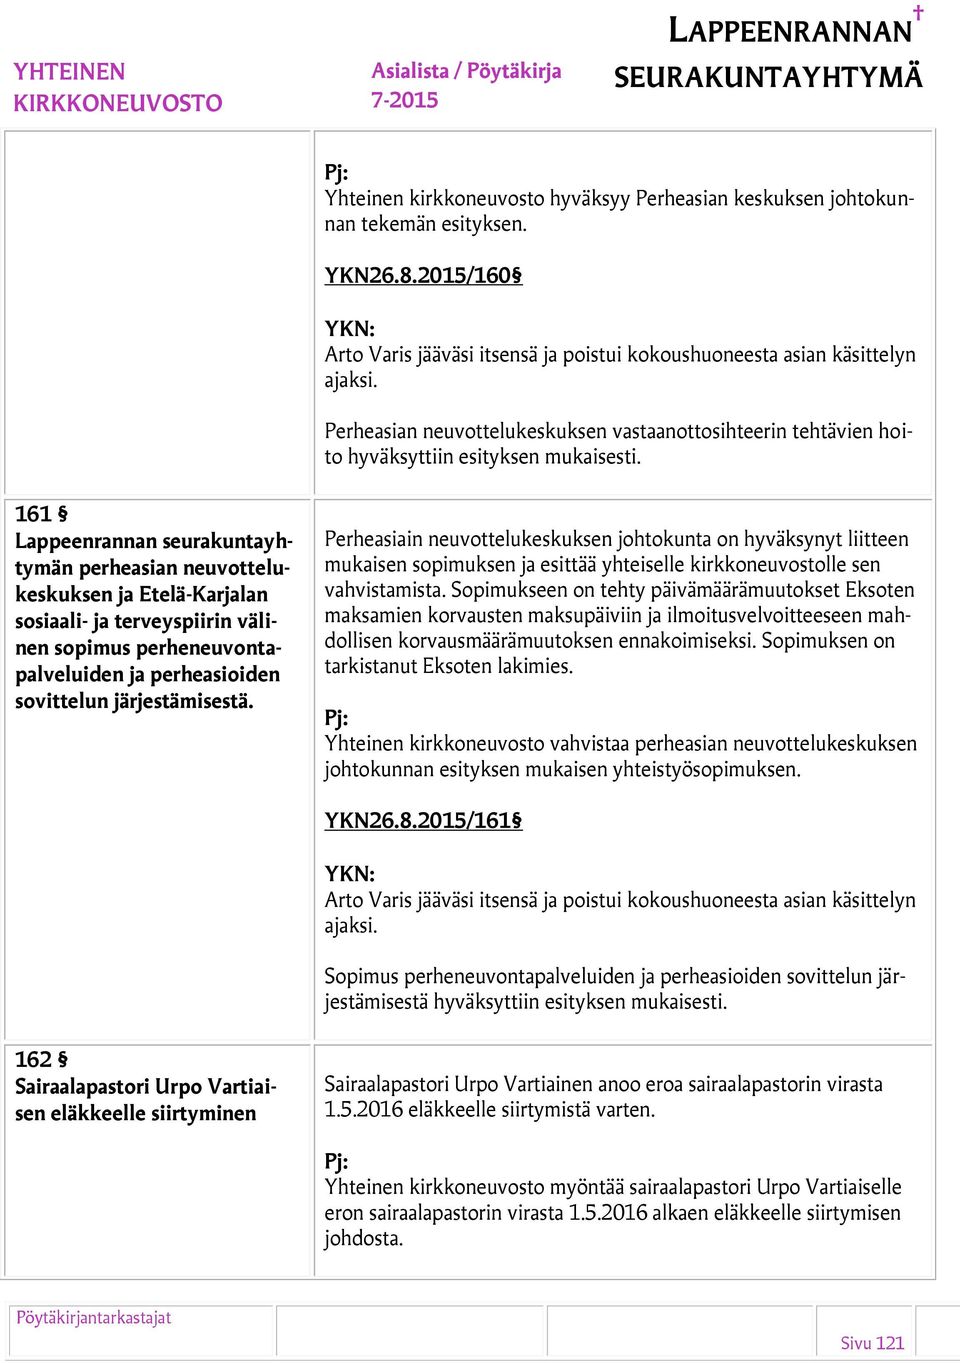 161 Lappeenrannan seurakuntayhtymän perheasian neuvottelukeskuksen ja Etelä-Karjalan sosiaali- ja terveyspiirin välinen sopimus perheneuvontapalveluiden ja perheasioiden sovittelun järjestämisestä.